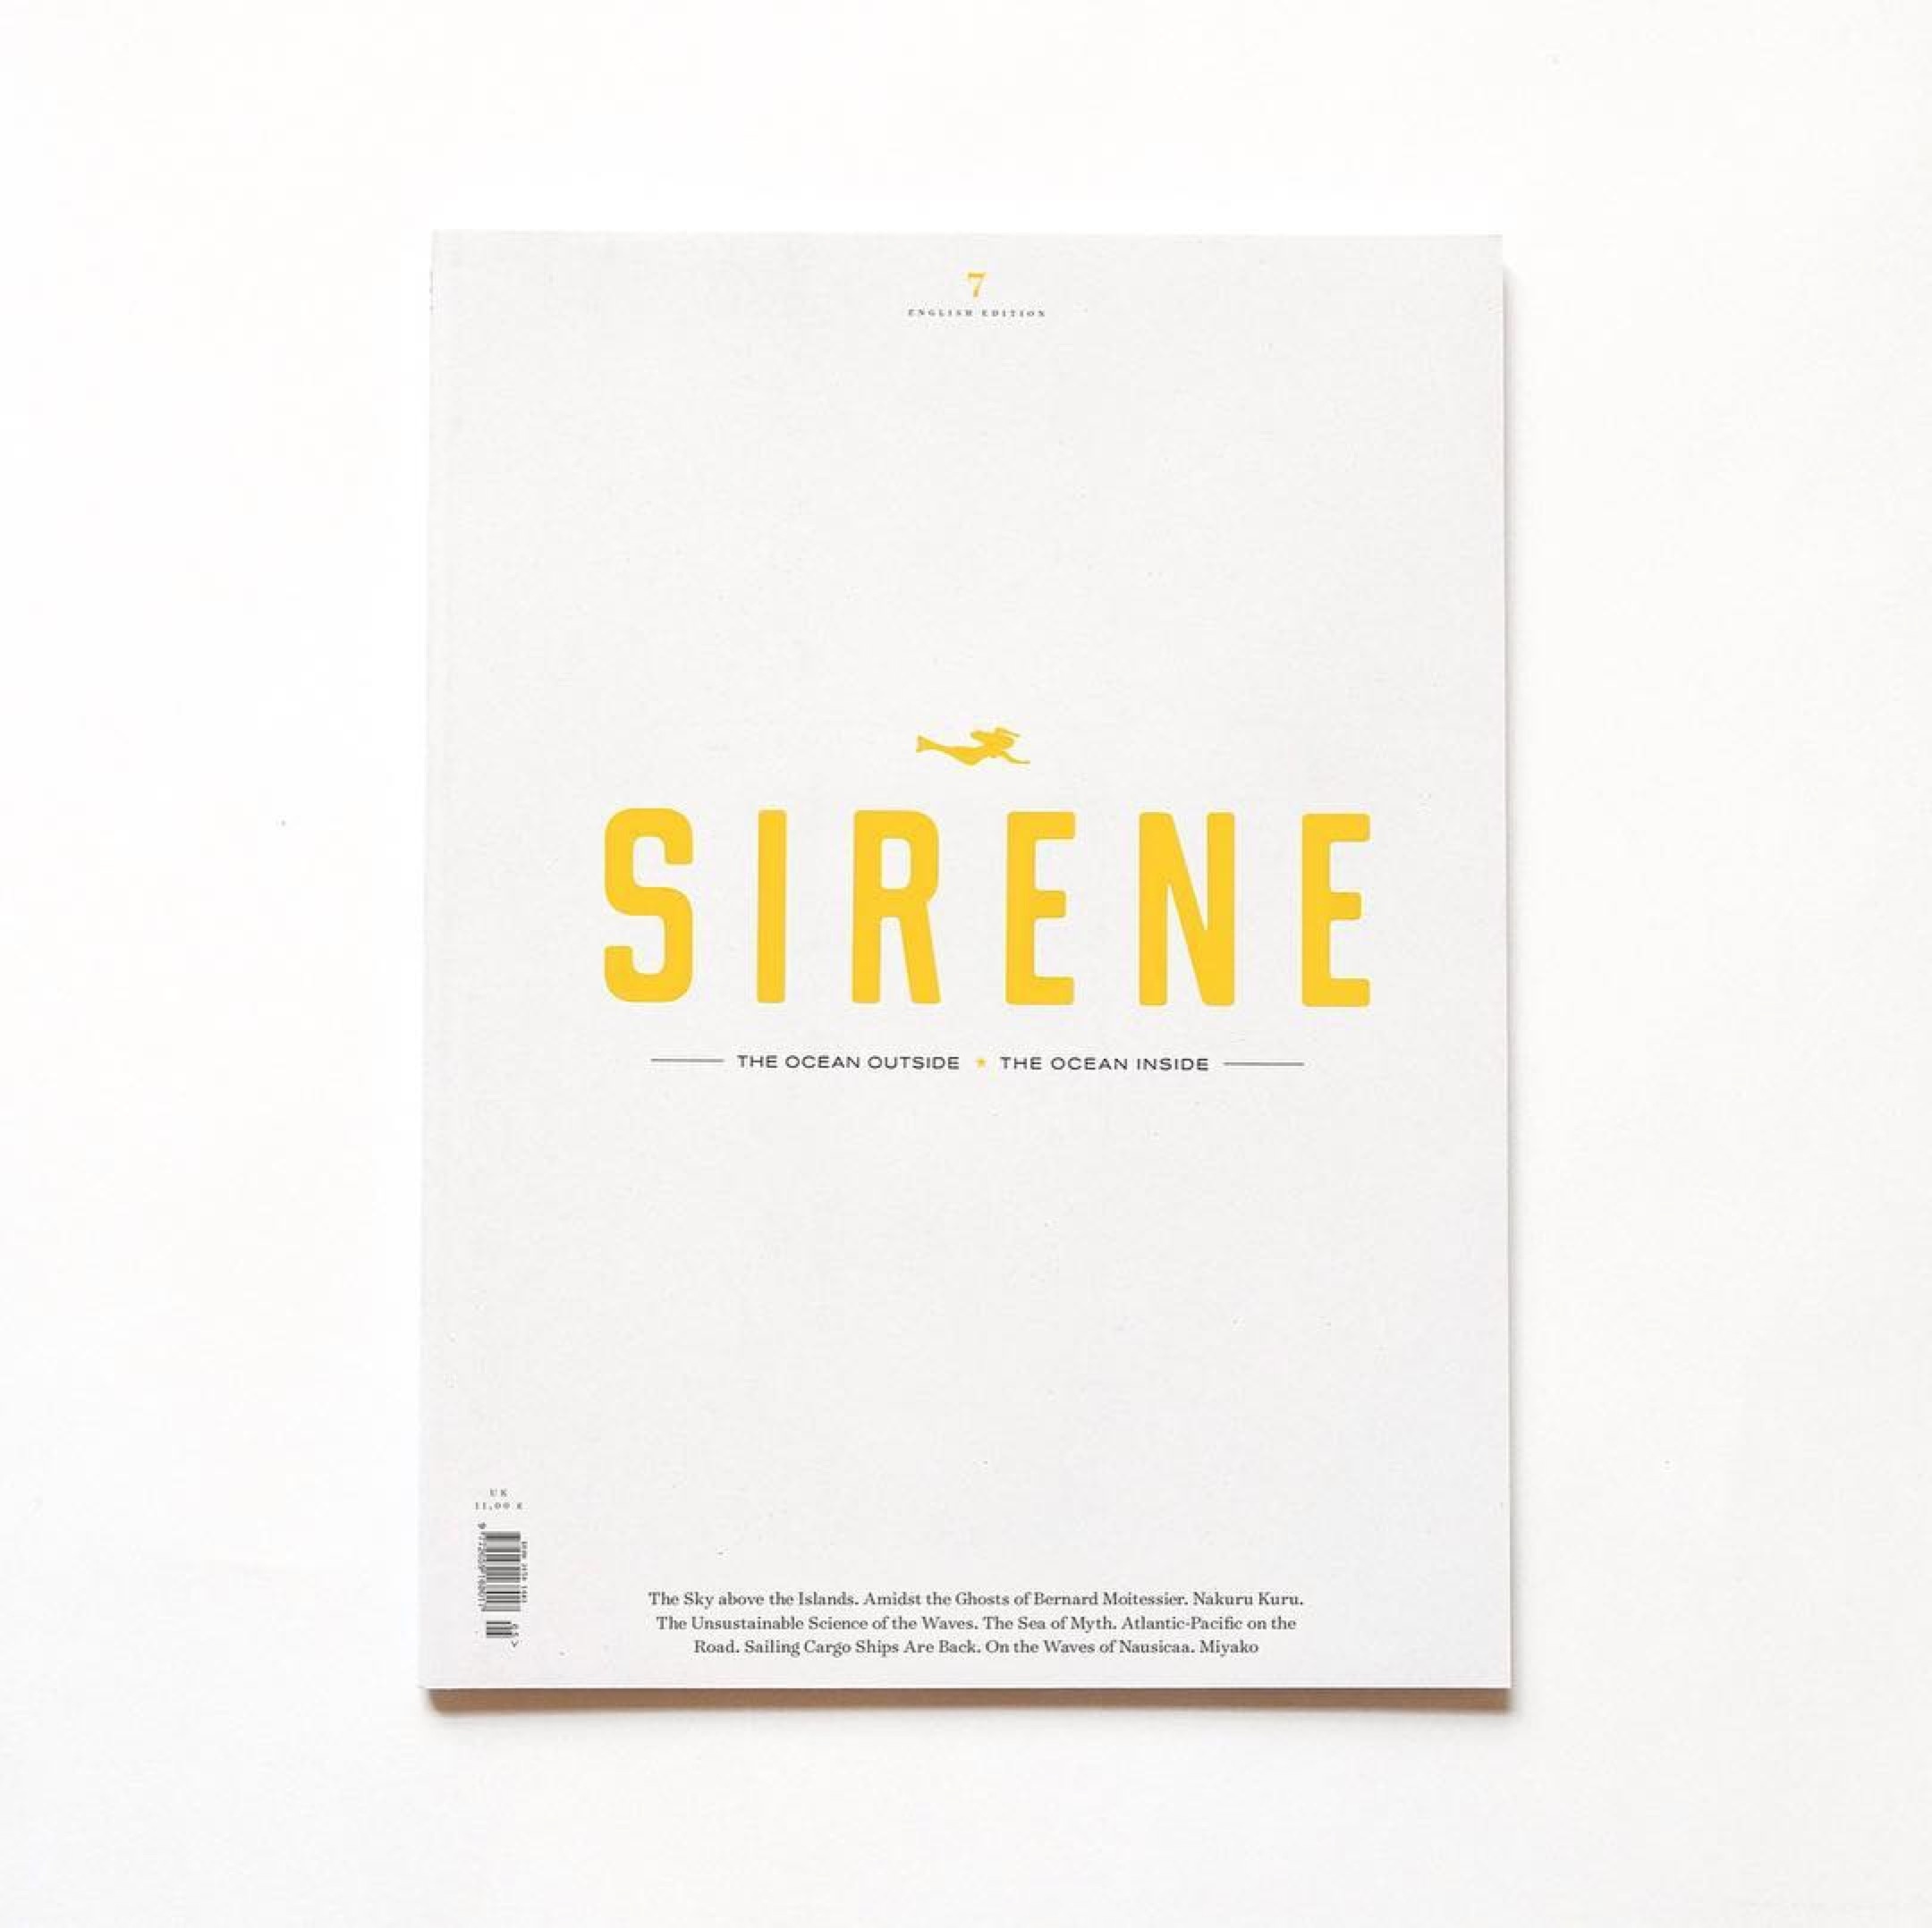 Sirene journal, issue 7